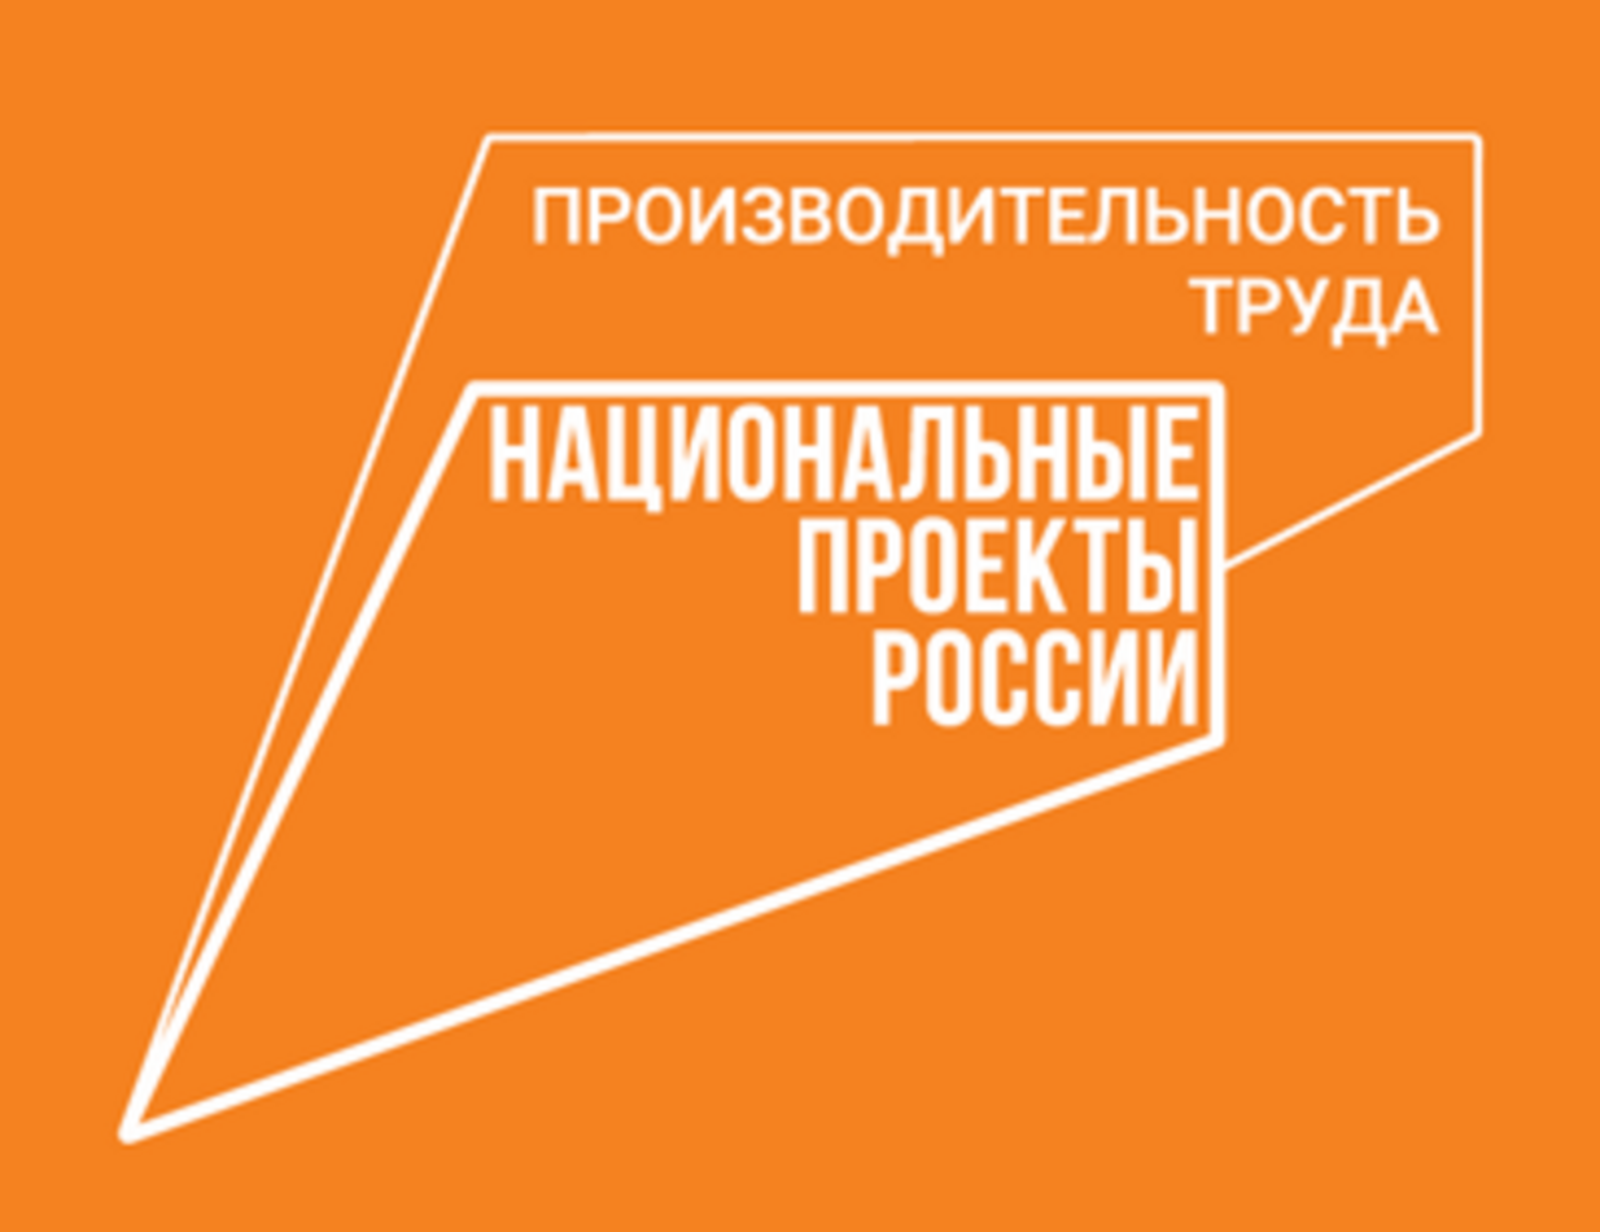 Предприятия-участники нацпроекта «Производительность труда» Башкортостана рассматривают получение льготного займа на инвестиционные цели